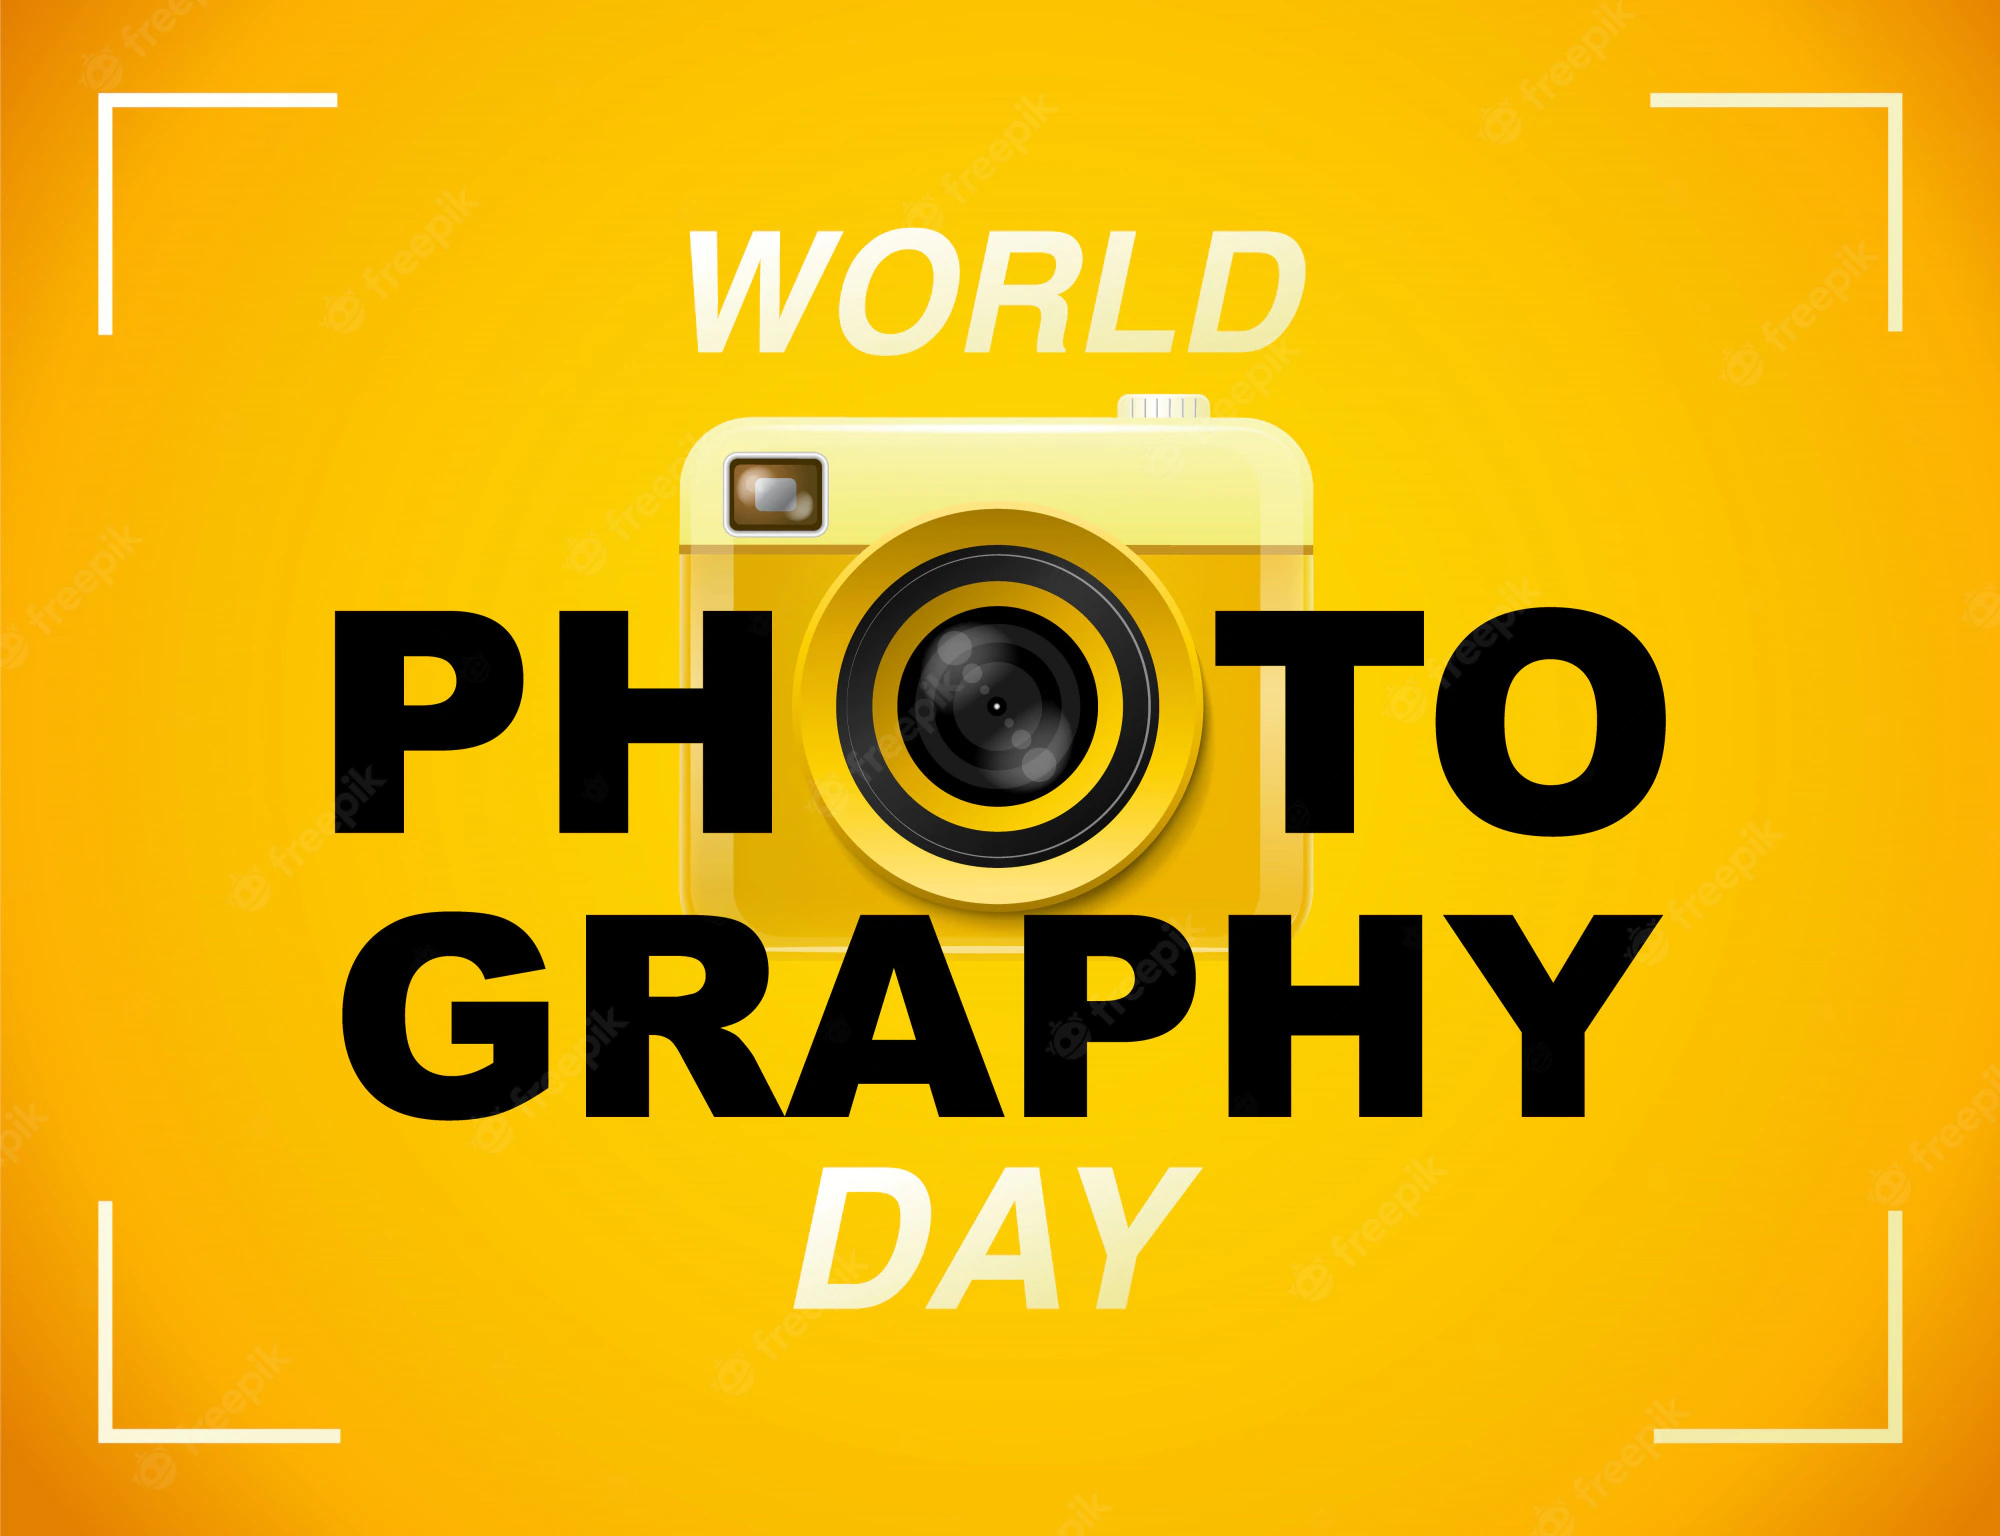 اليوم العالمي للتصوير الفوتوغرافي 2022: الموضوع الحالي والاقتباسات والملصقات والصور والشعارات والرسائل وأمنيات المشاركة